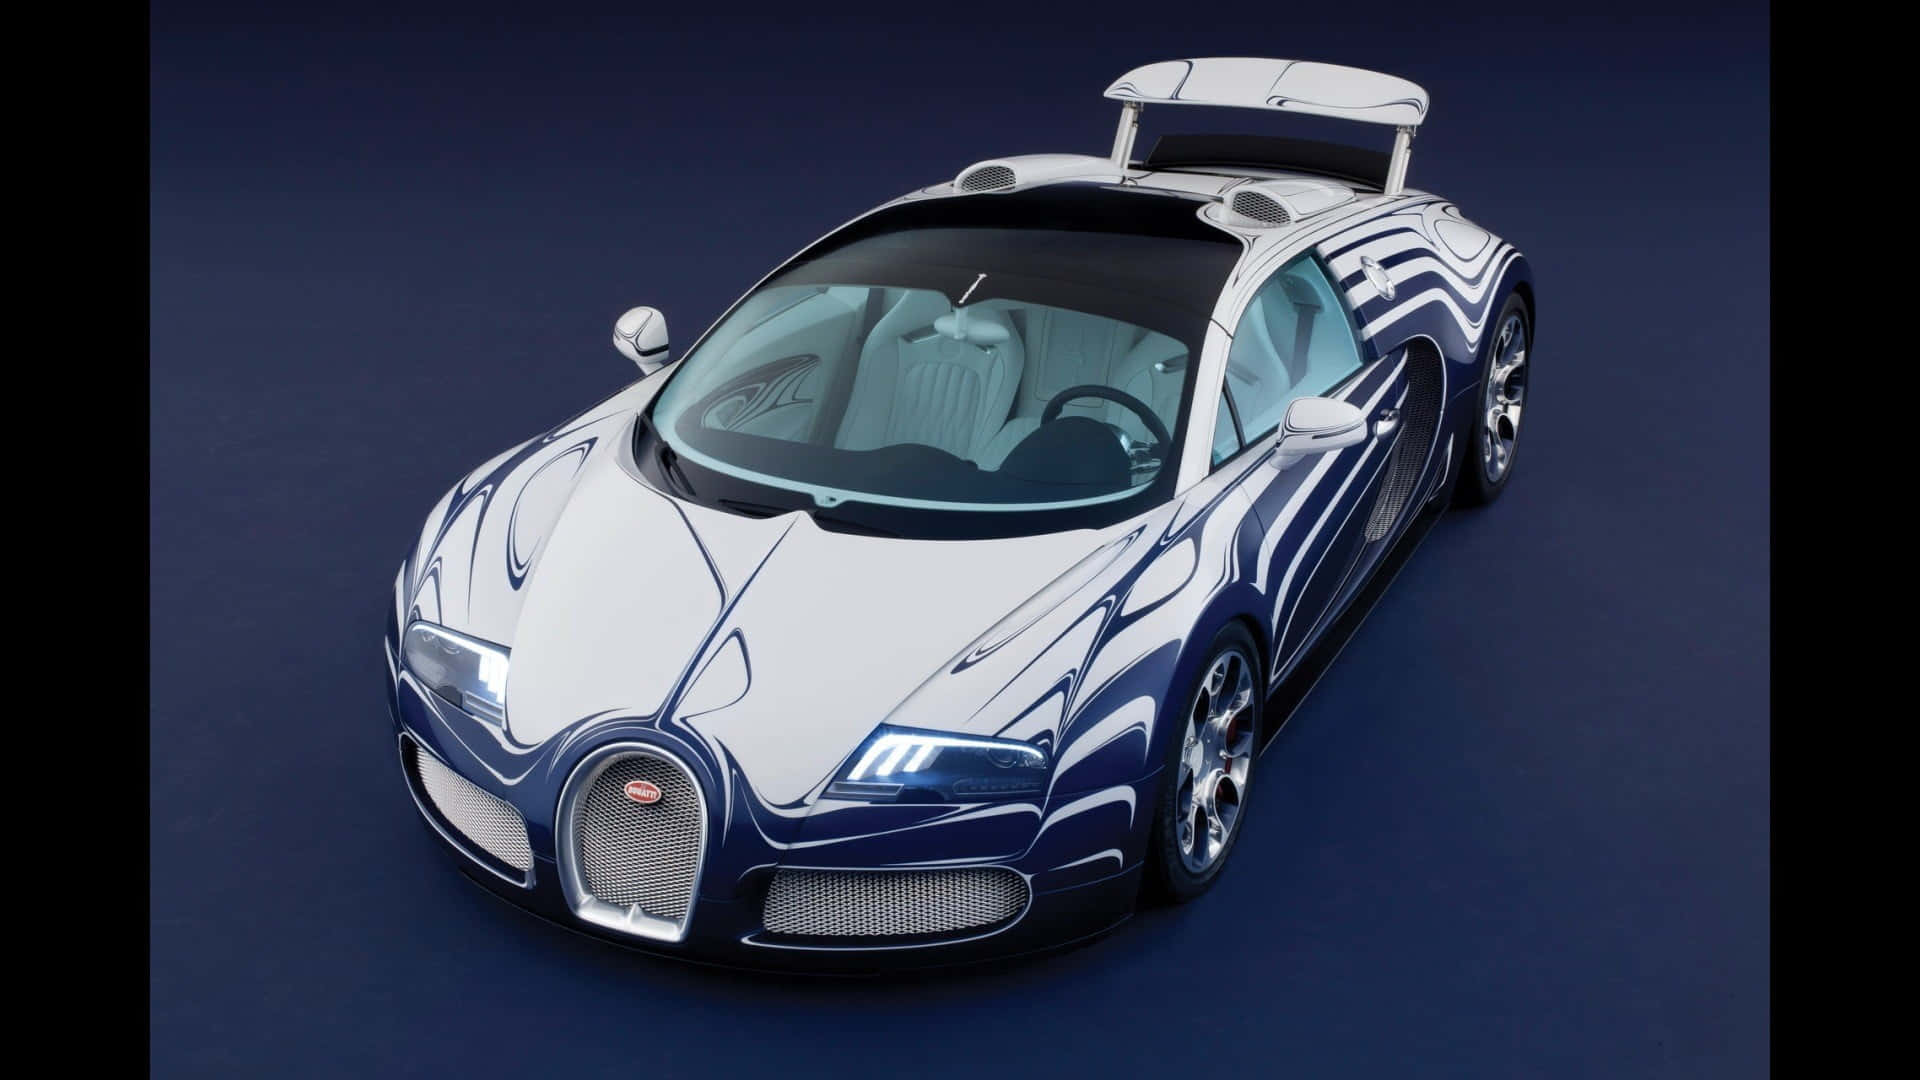 Bright lights, fast cars: the Neon Bugatti. Wallpaper